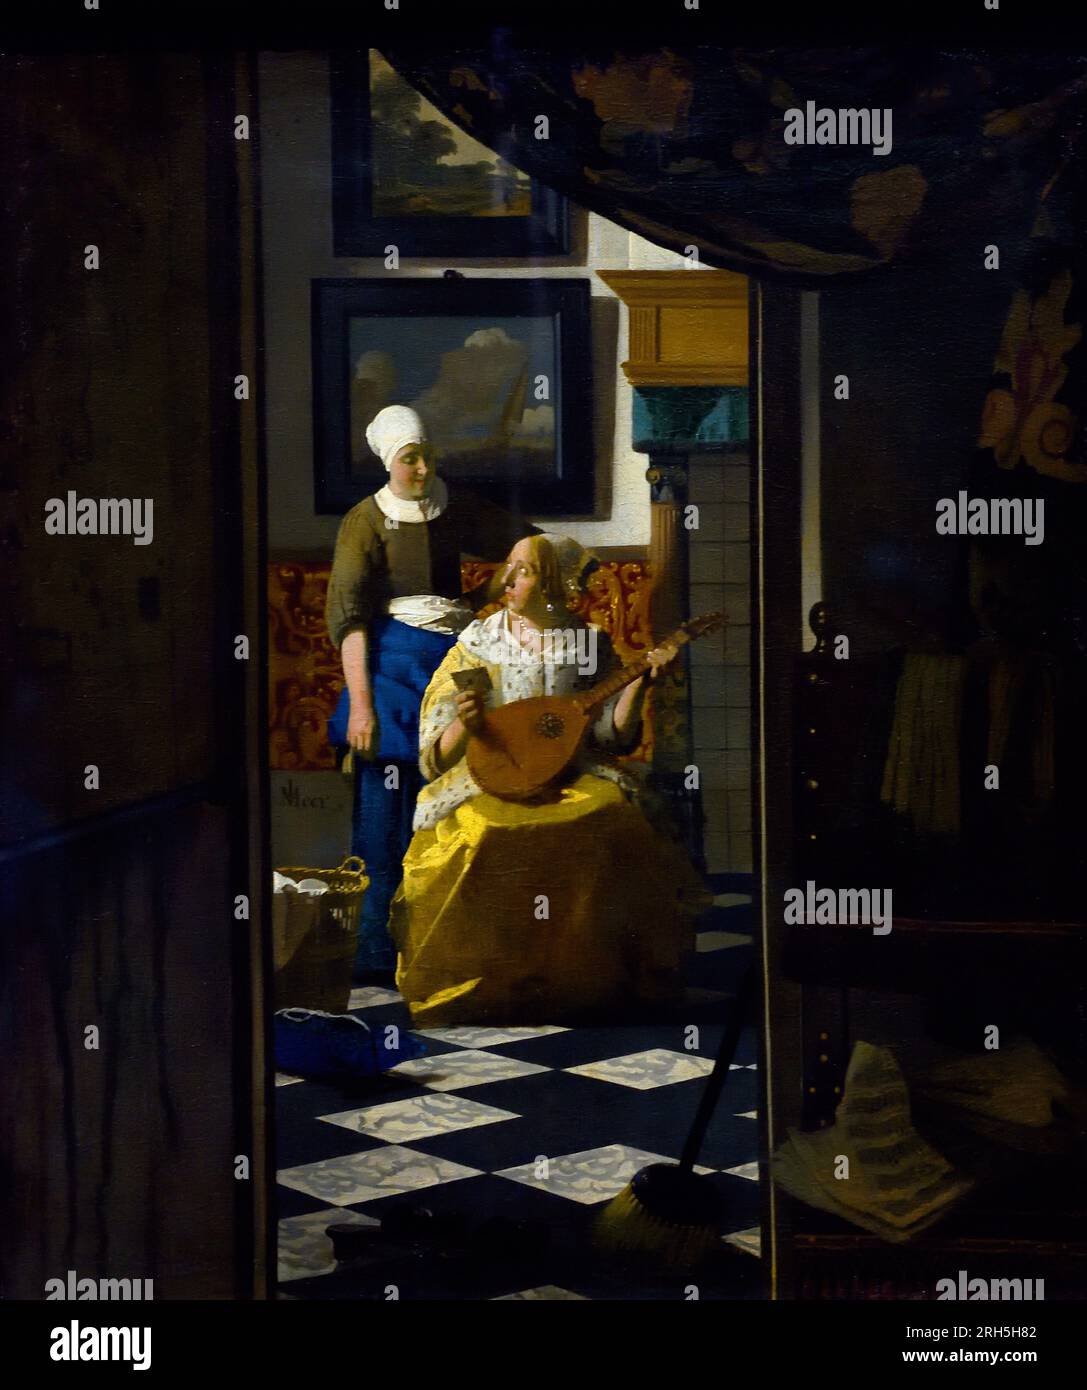 La lettre d'amour 1669 Johannes Vermeer Jan Vermeer 1632 ou 1675 Pays-Bas - néerlandais Banque D'Images